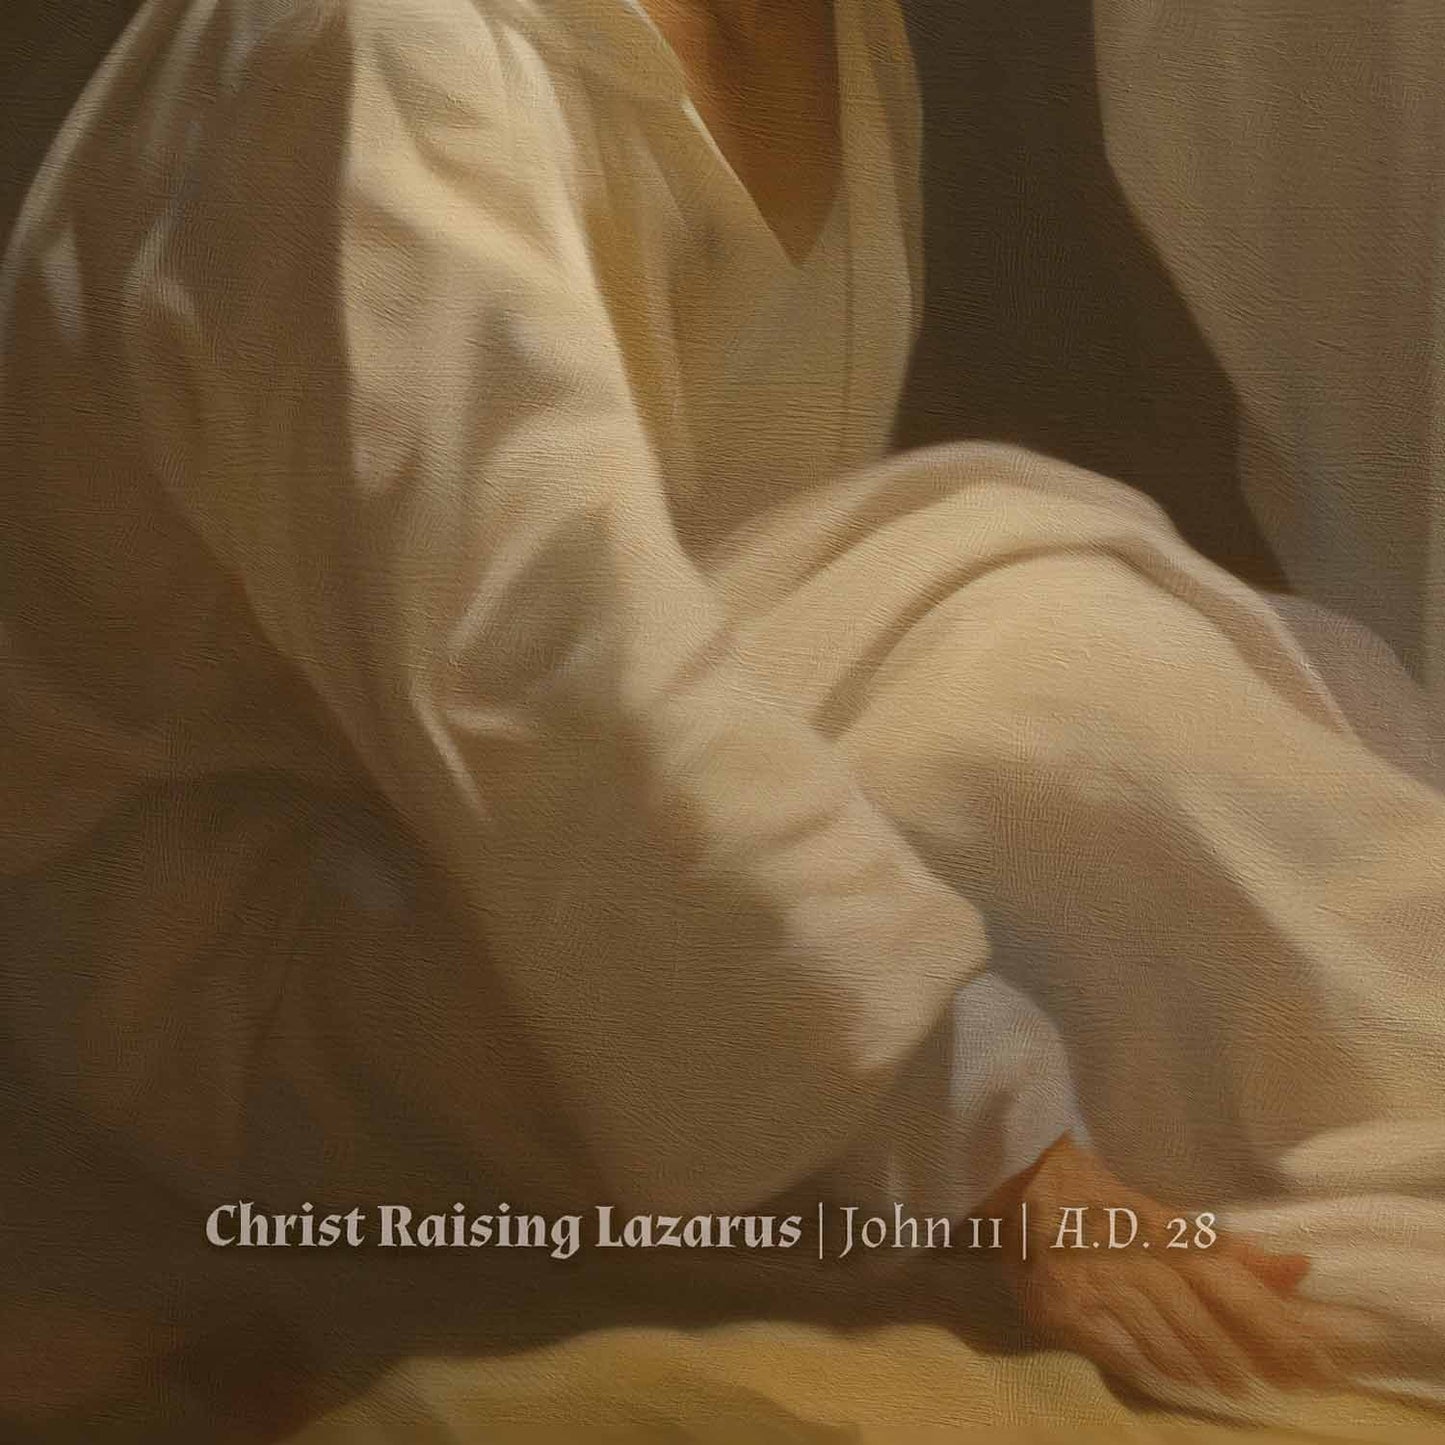 Raising Lazarus | Poster